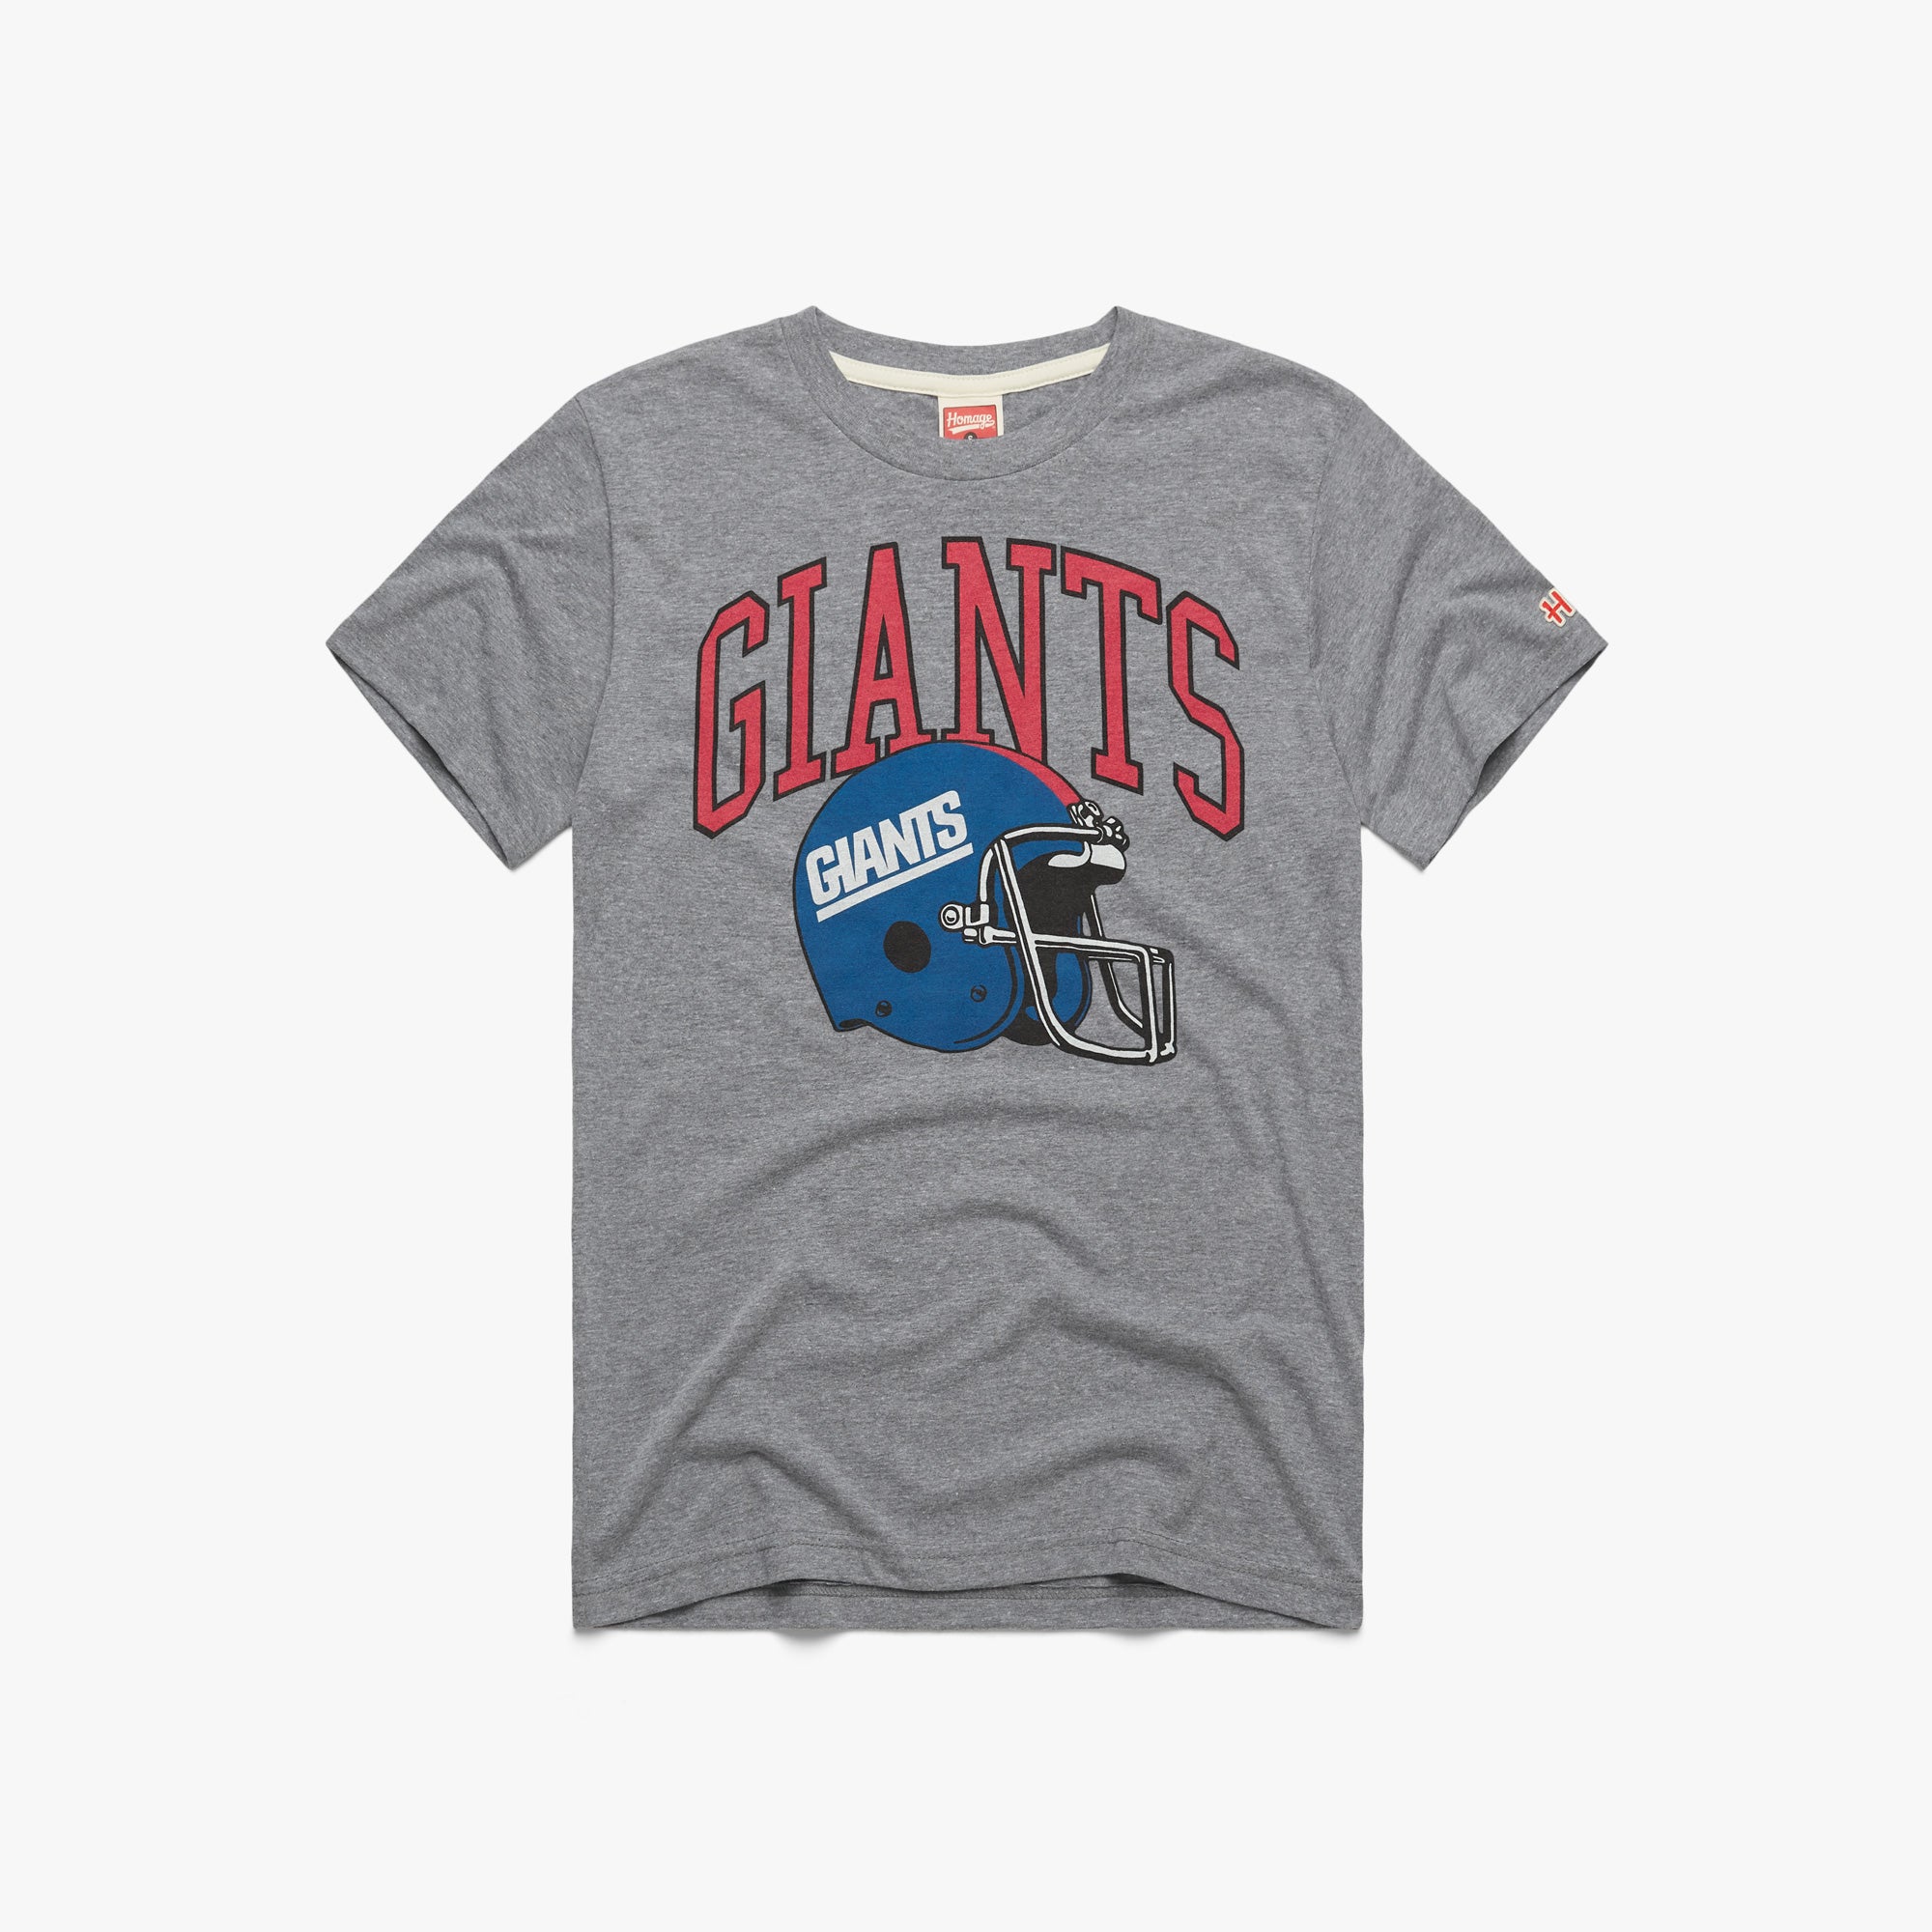 New York Giants Apparel, NY Giants Gear, New York Giants Shop, NY